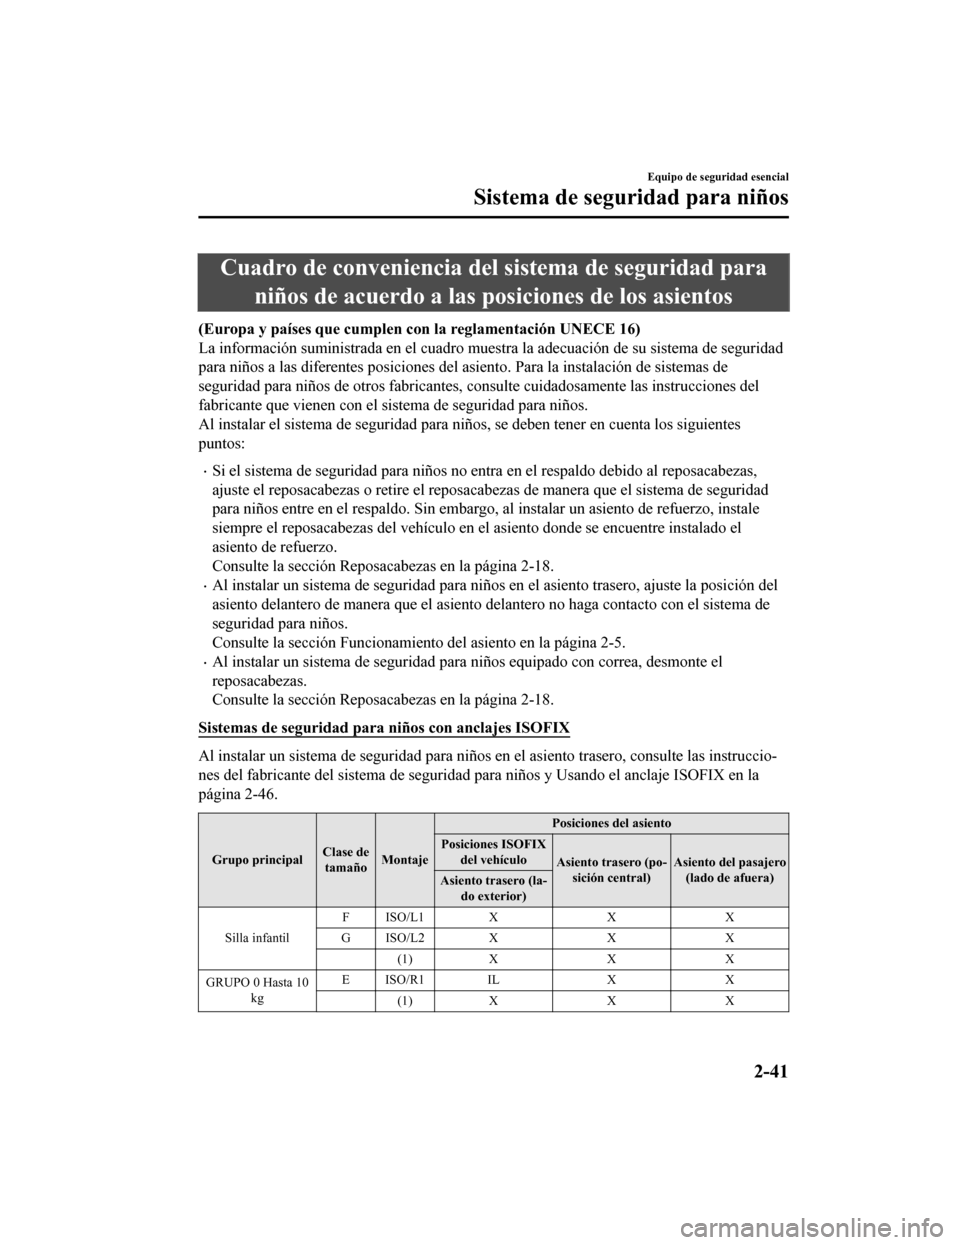 MAZDA MODEL CX-5 2019  Manual del propietario (in Spanish) Cuadro de conveniencia del sistema de seguridad paraniños de acuerdo a las posiciones de los asientos
(Europa y países que cumplen con la reglamentación UNECE 16)
La información suministrada en el